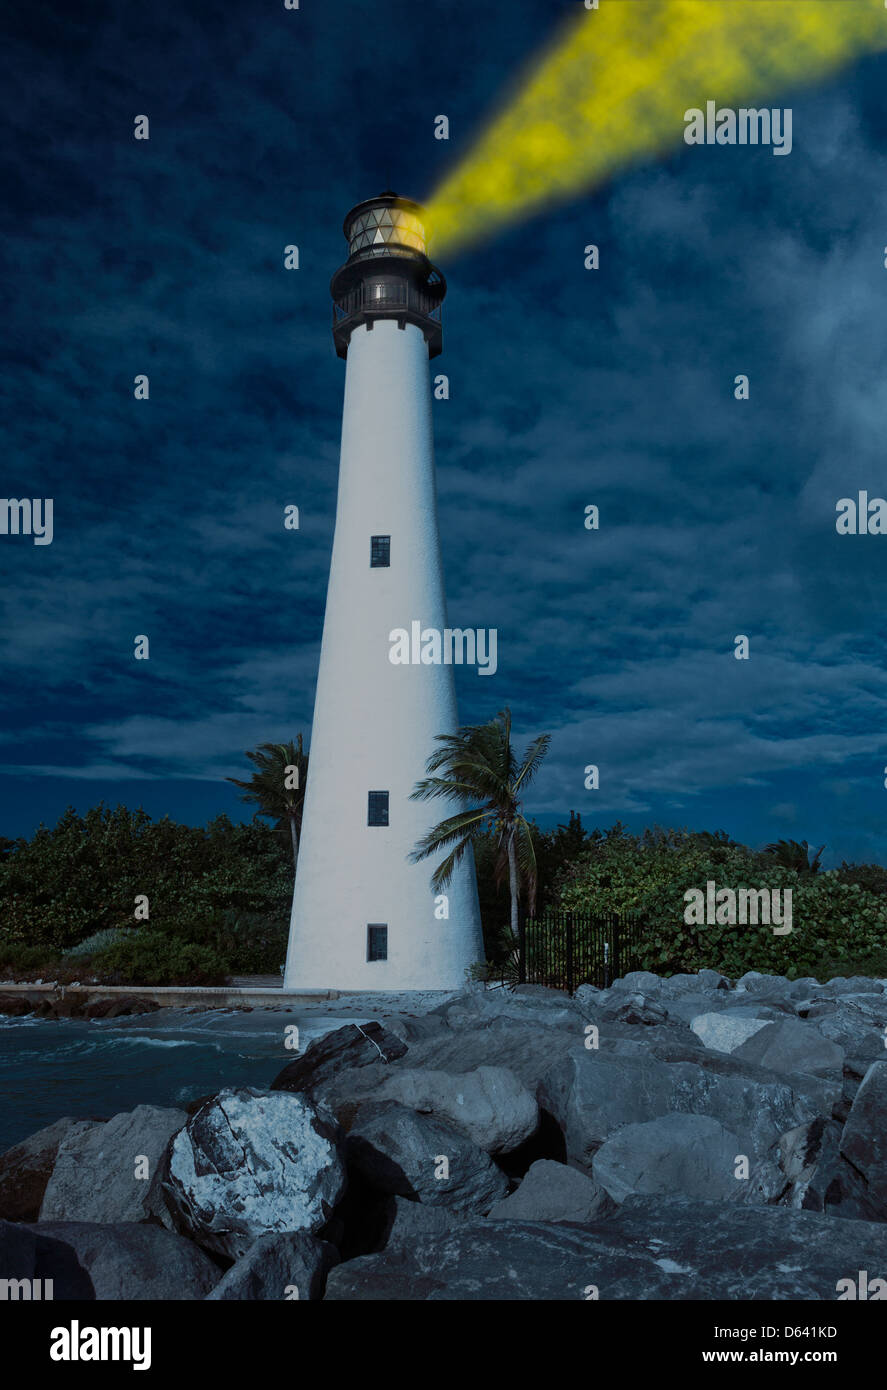 Le phare de Cape Florida et lanterne en parc national Bill Baggs à Key Biscayne en Floride avec la lumière allumé la nuit Banque D'Images